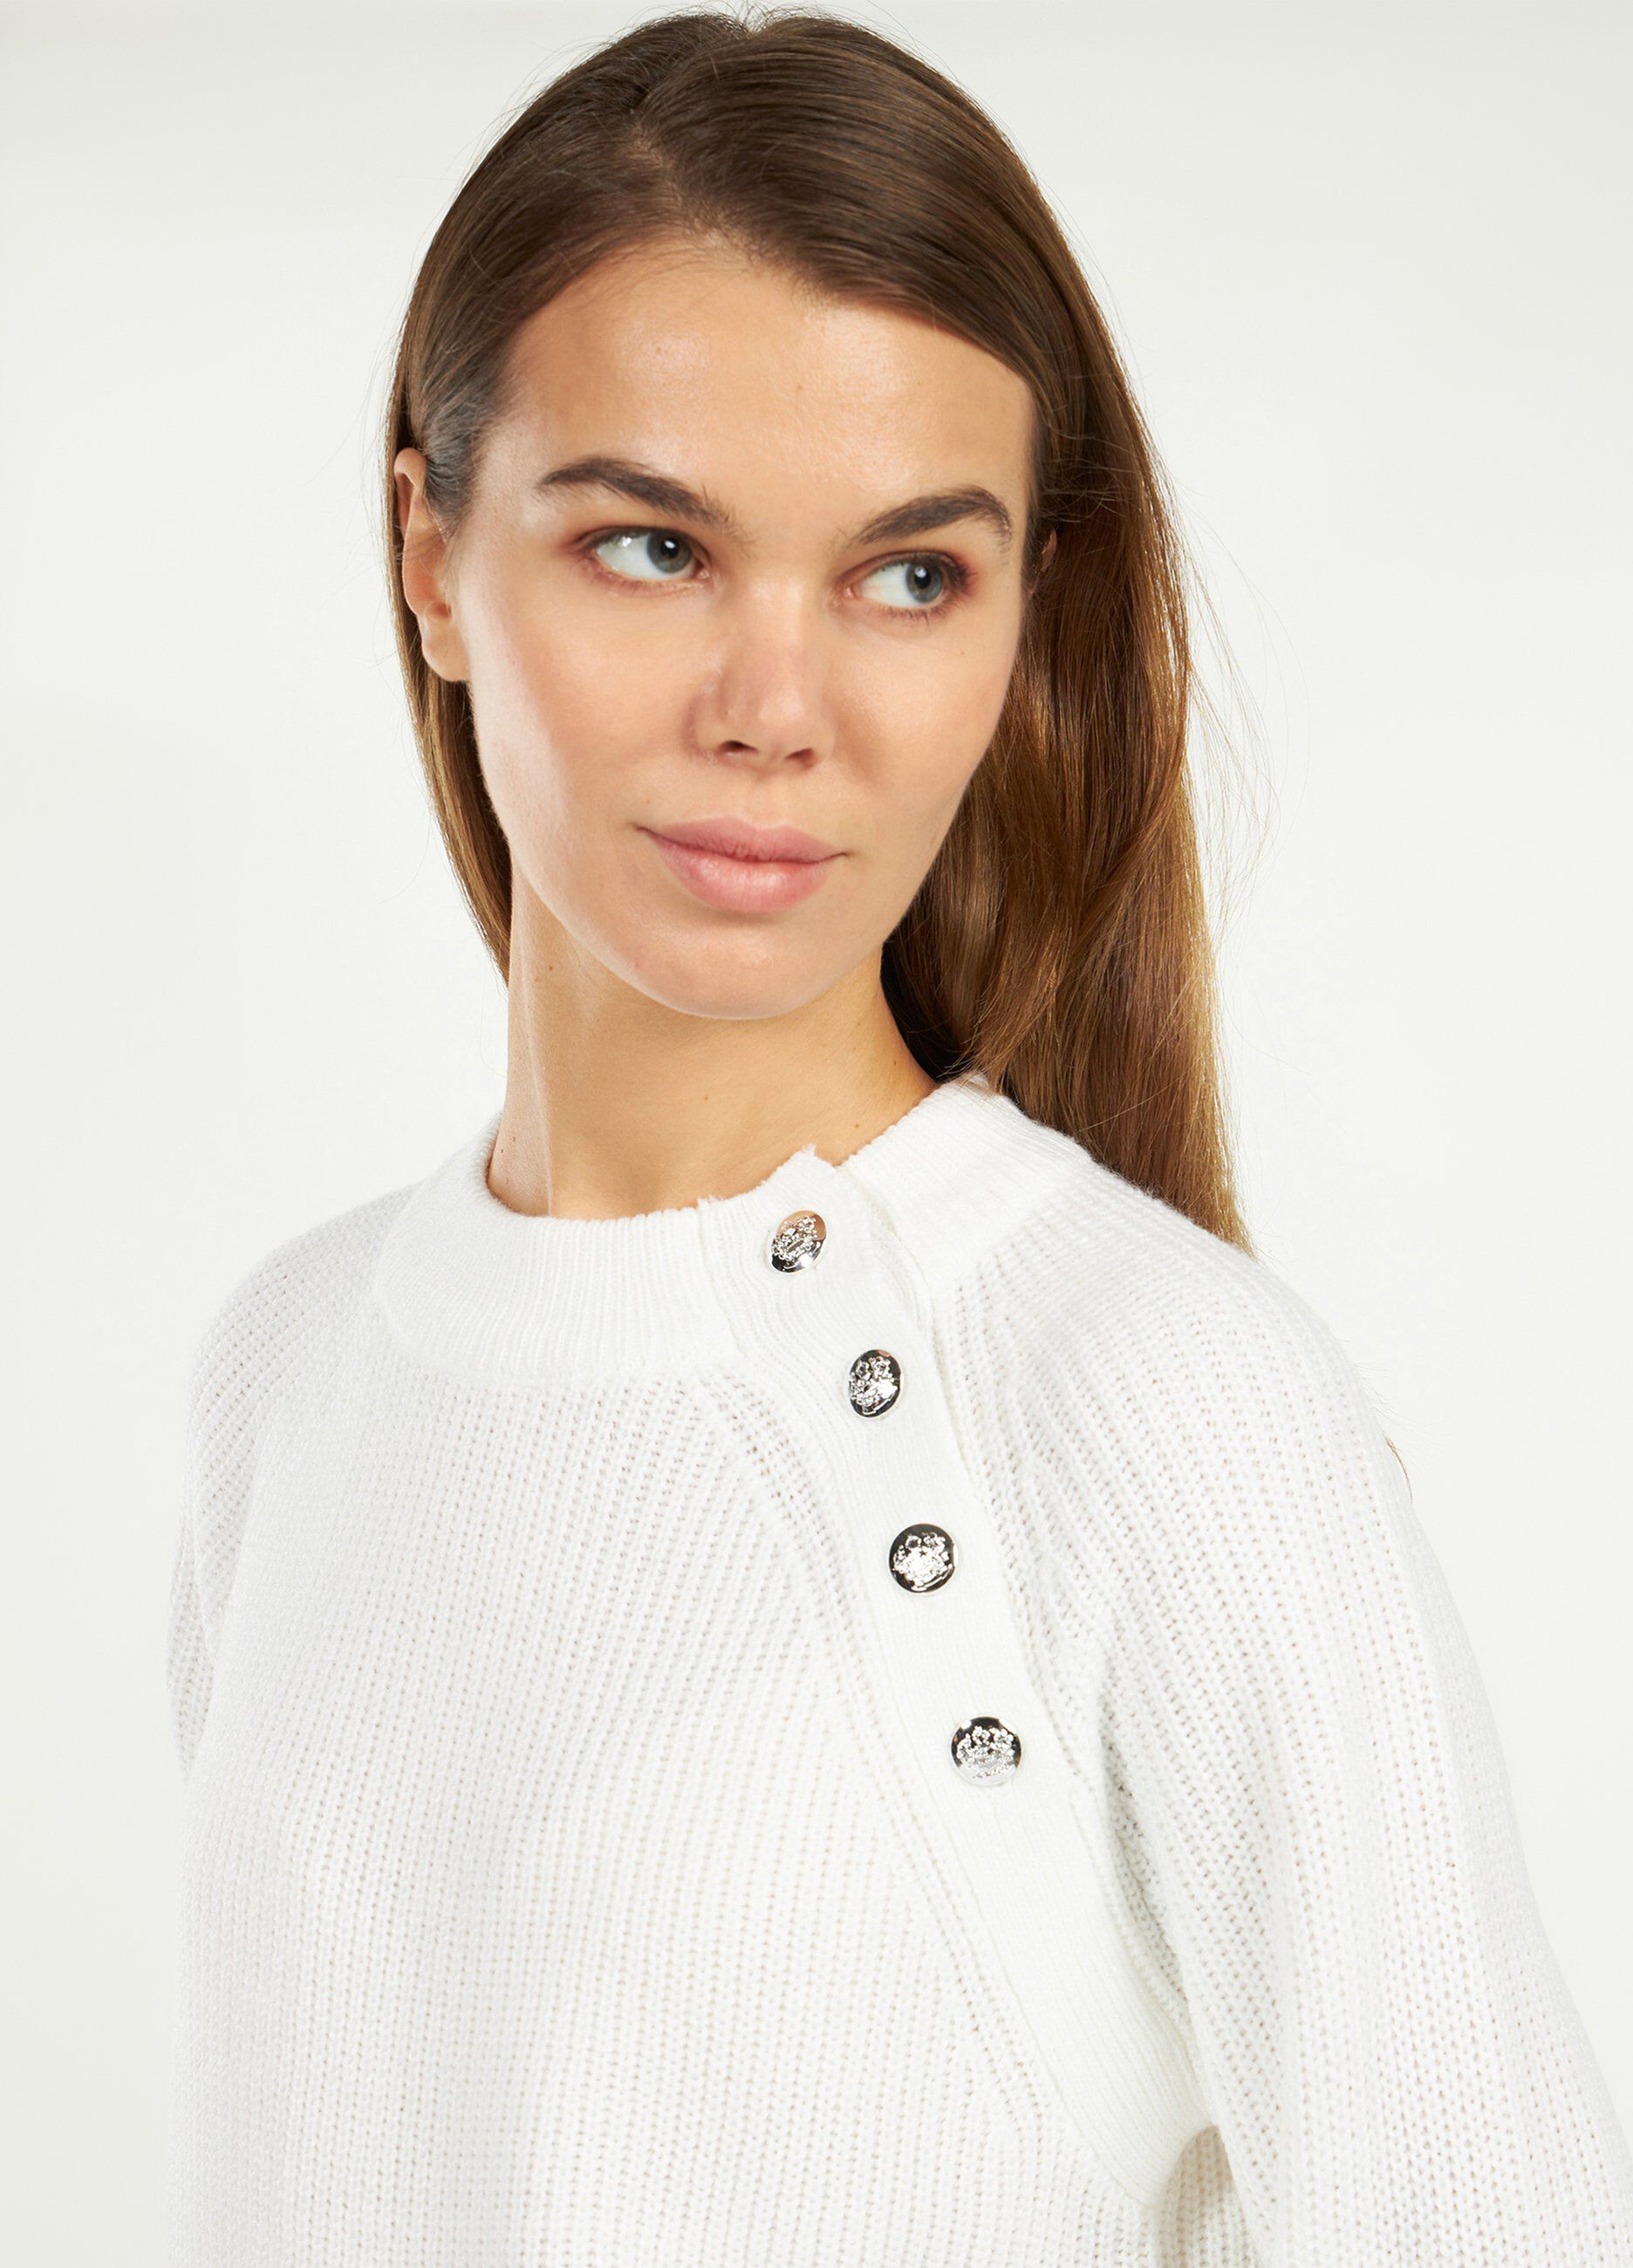 Maglione tricot con bottoni donna_1